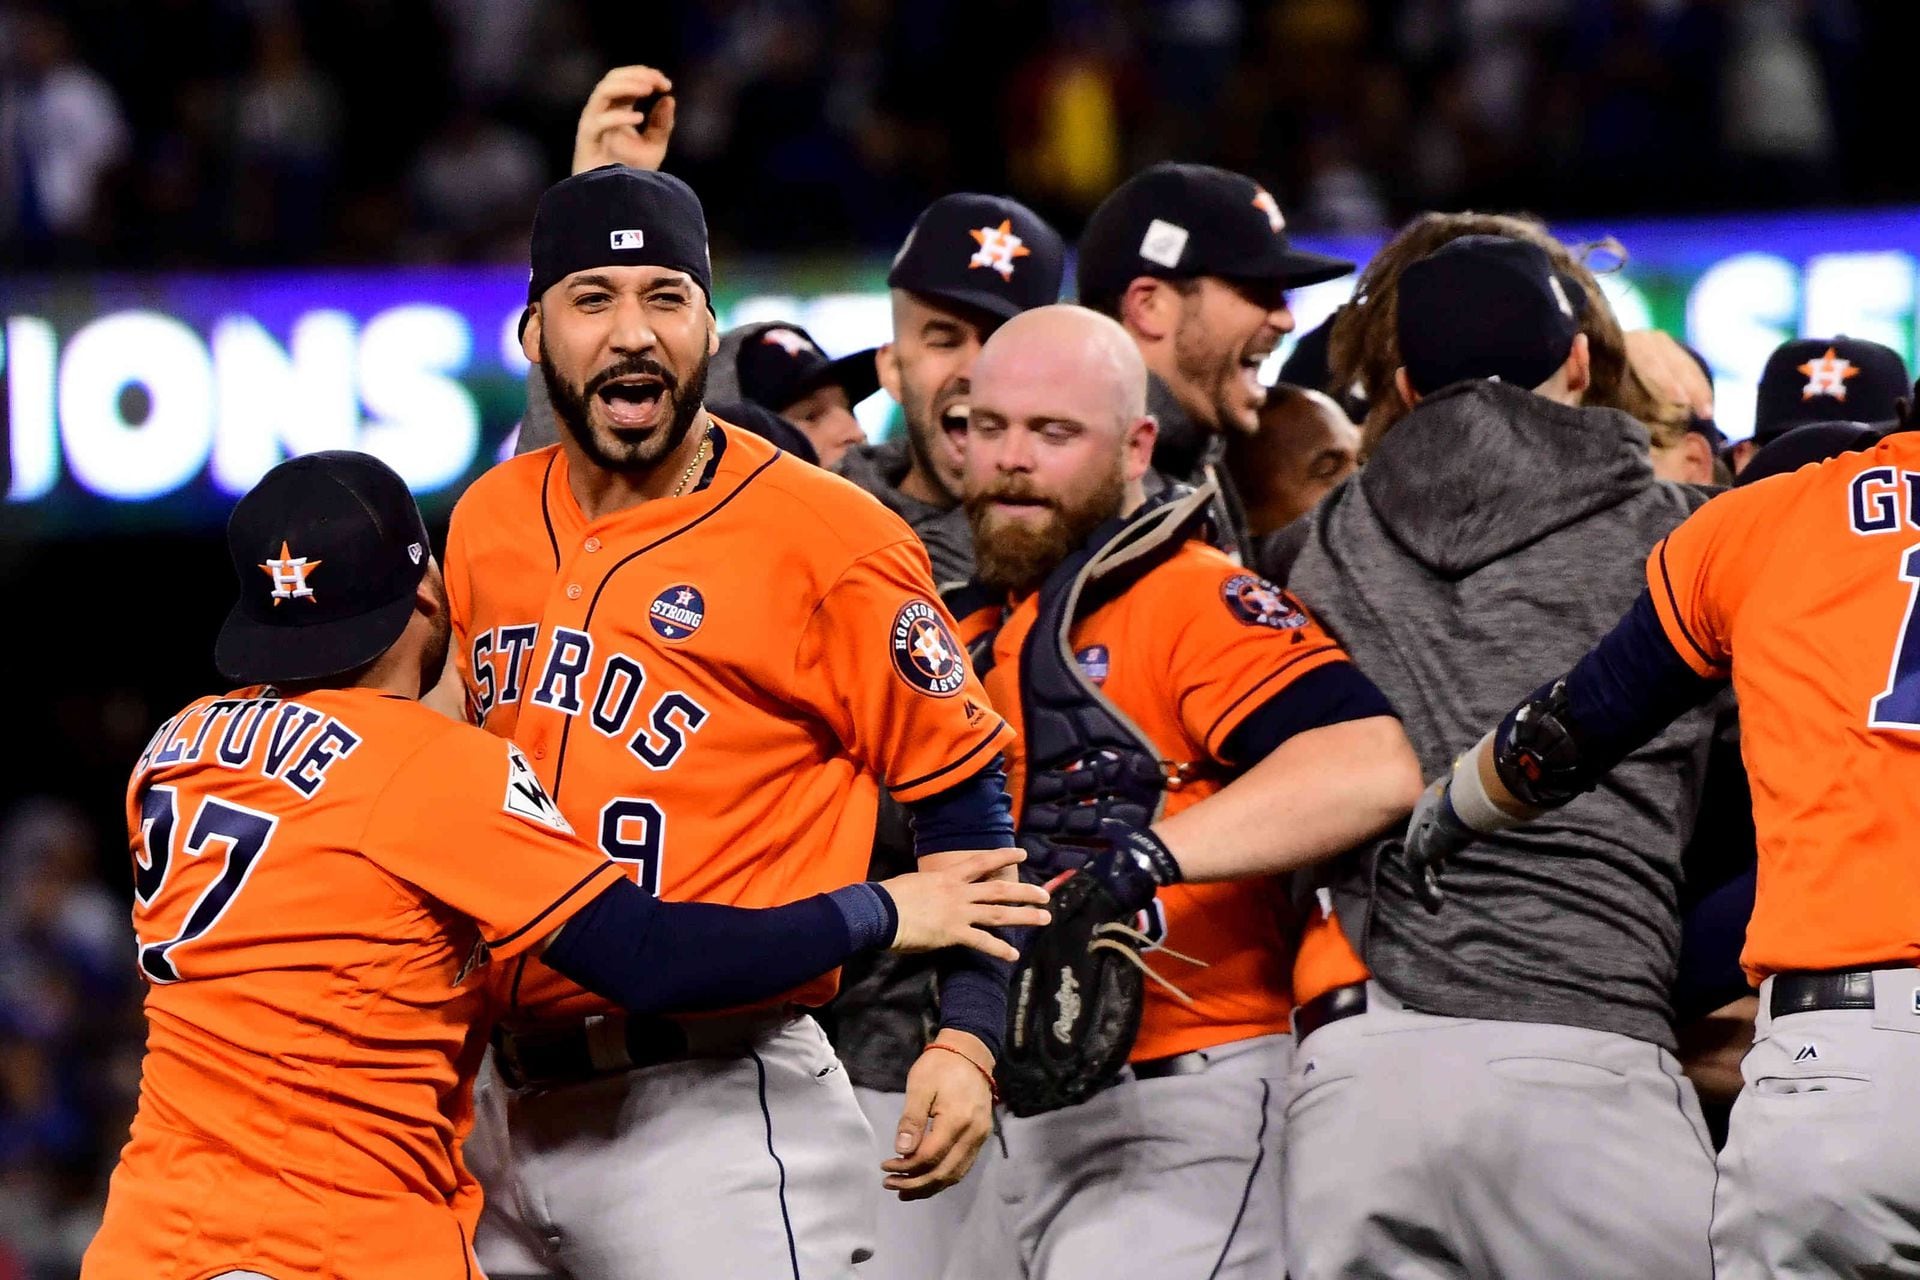 Astros de Houston, al fin campeones de la Serie Mundial